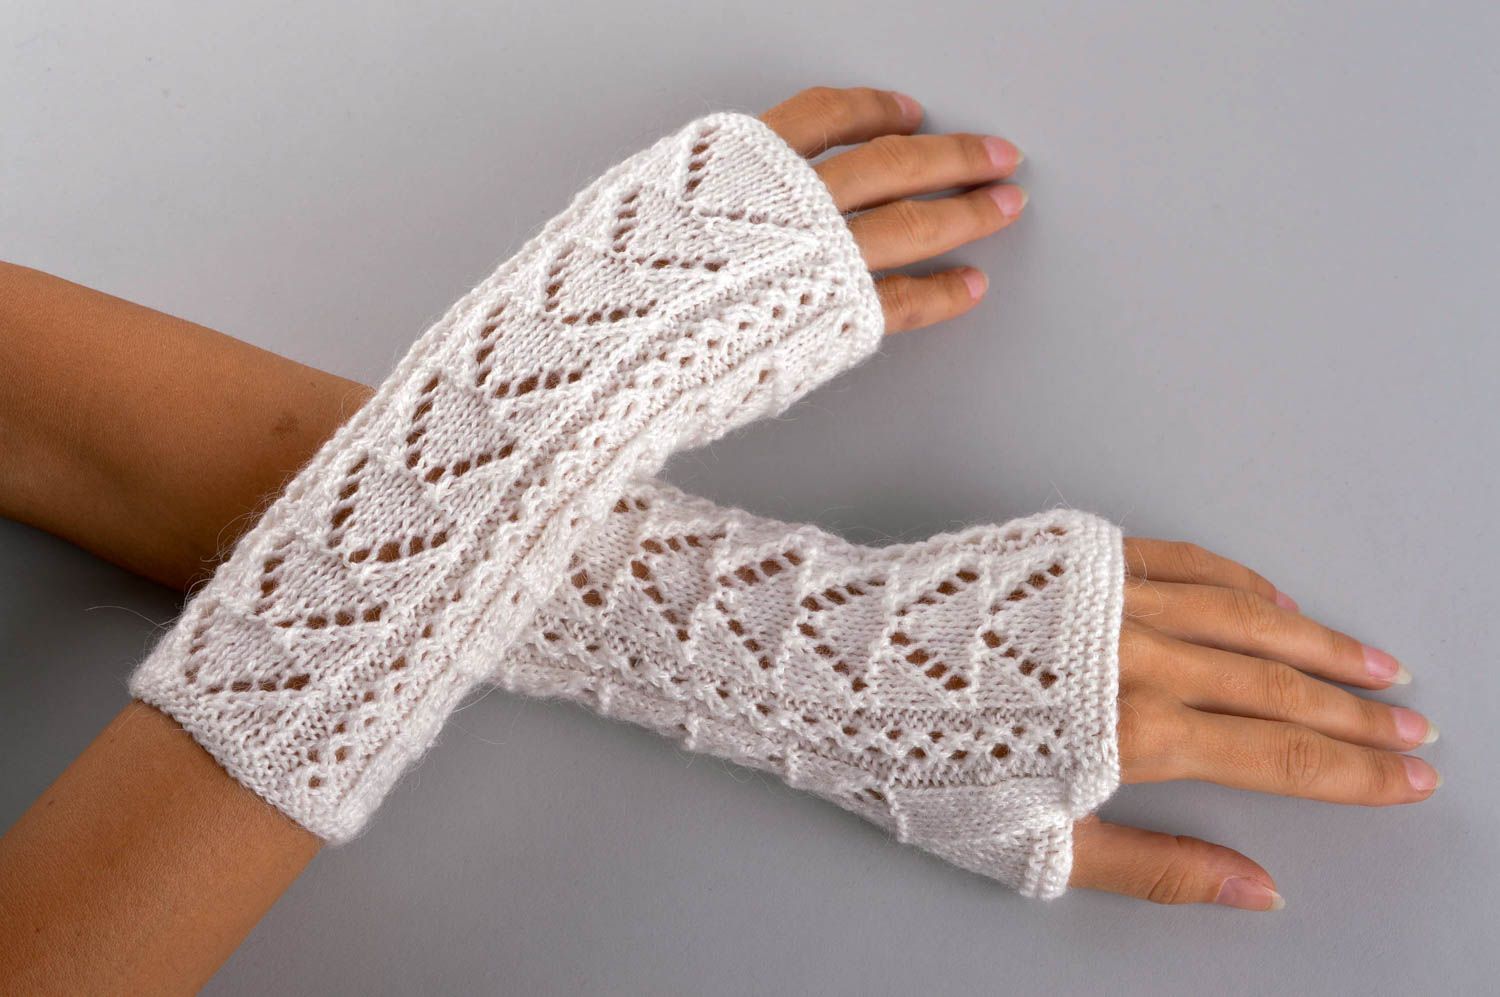 Вязаные митенки ручной работы перчатки для женщин журные вязаный аксессуар фото 1